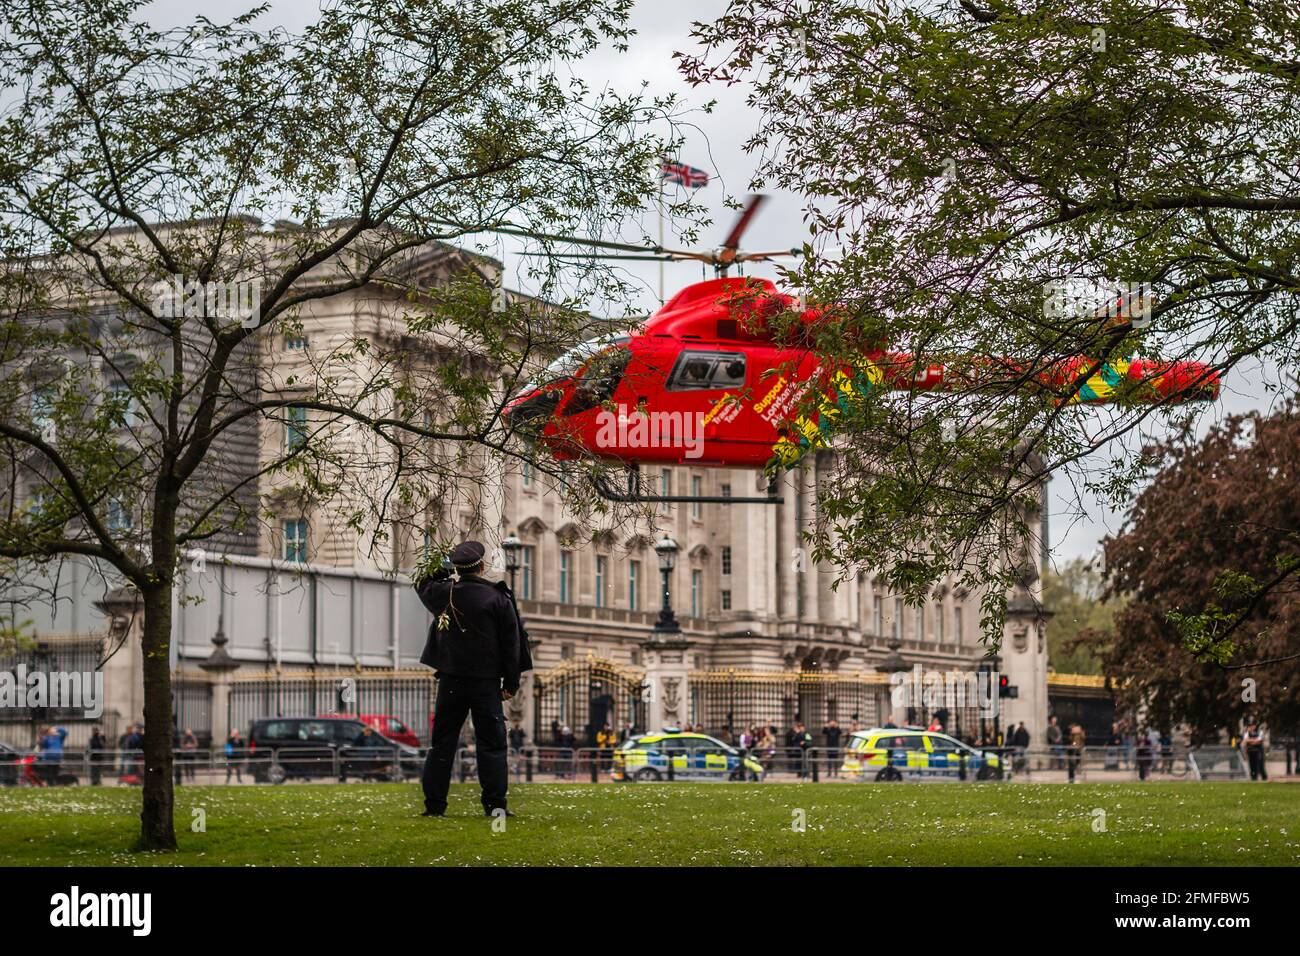 Der Londoner Air Ambulance G-EHMS hebt nach einem Zwischenfall in der Nähe der Victoria Station von der Grünfläche des Buckingham Palace ab Stockfoto